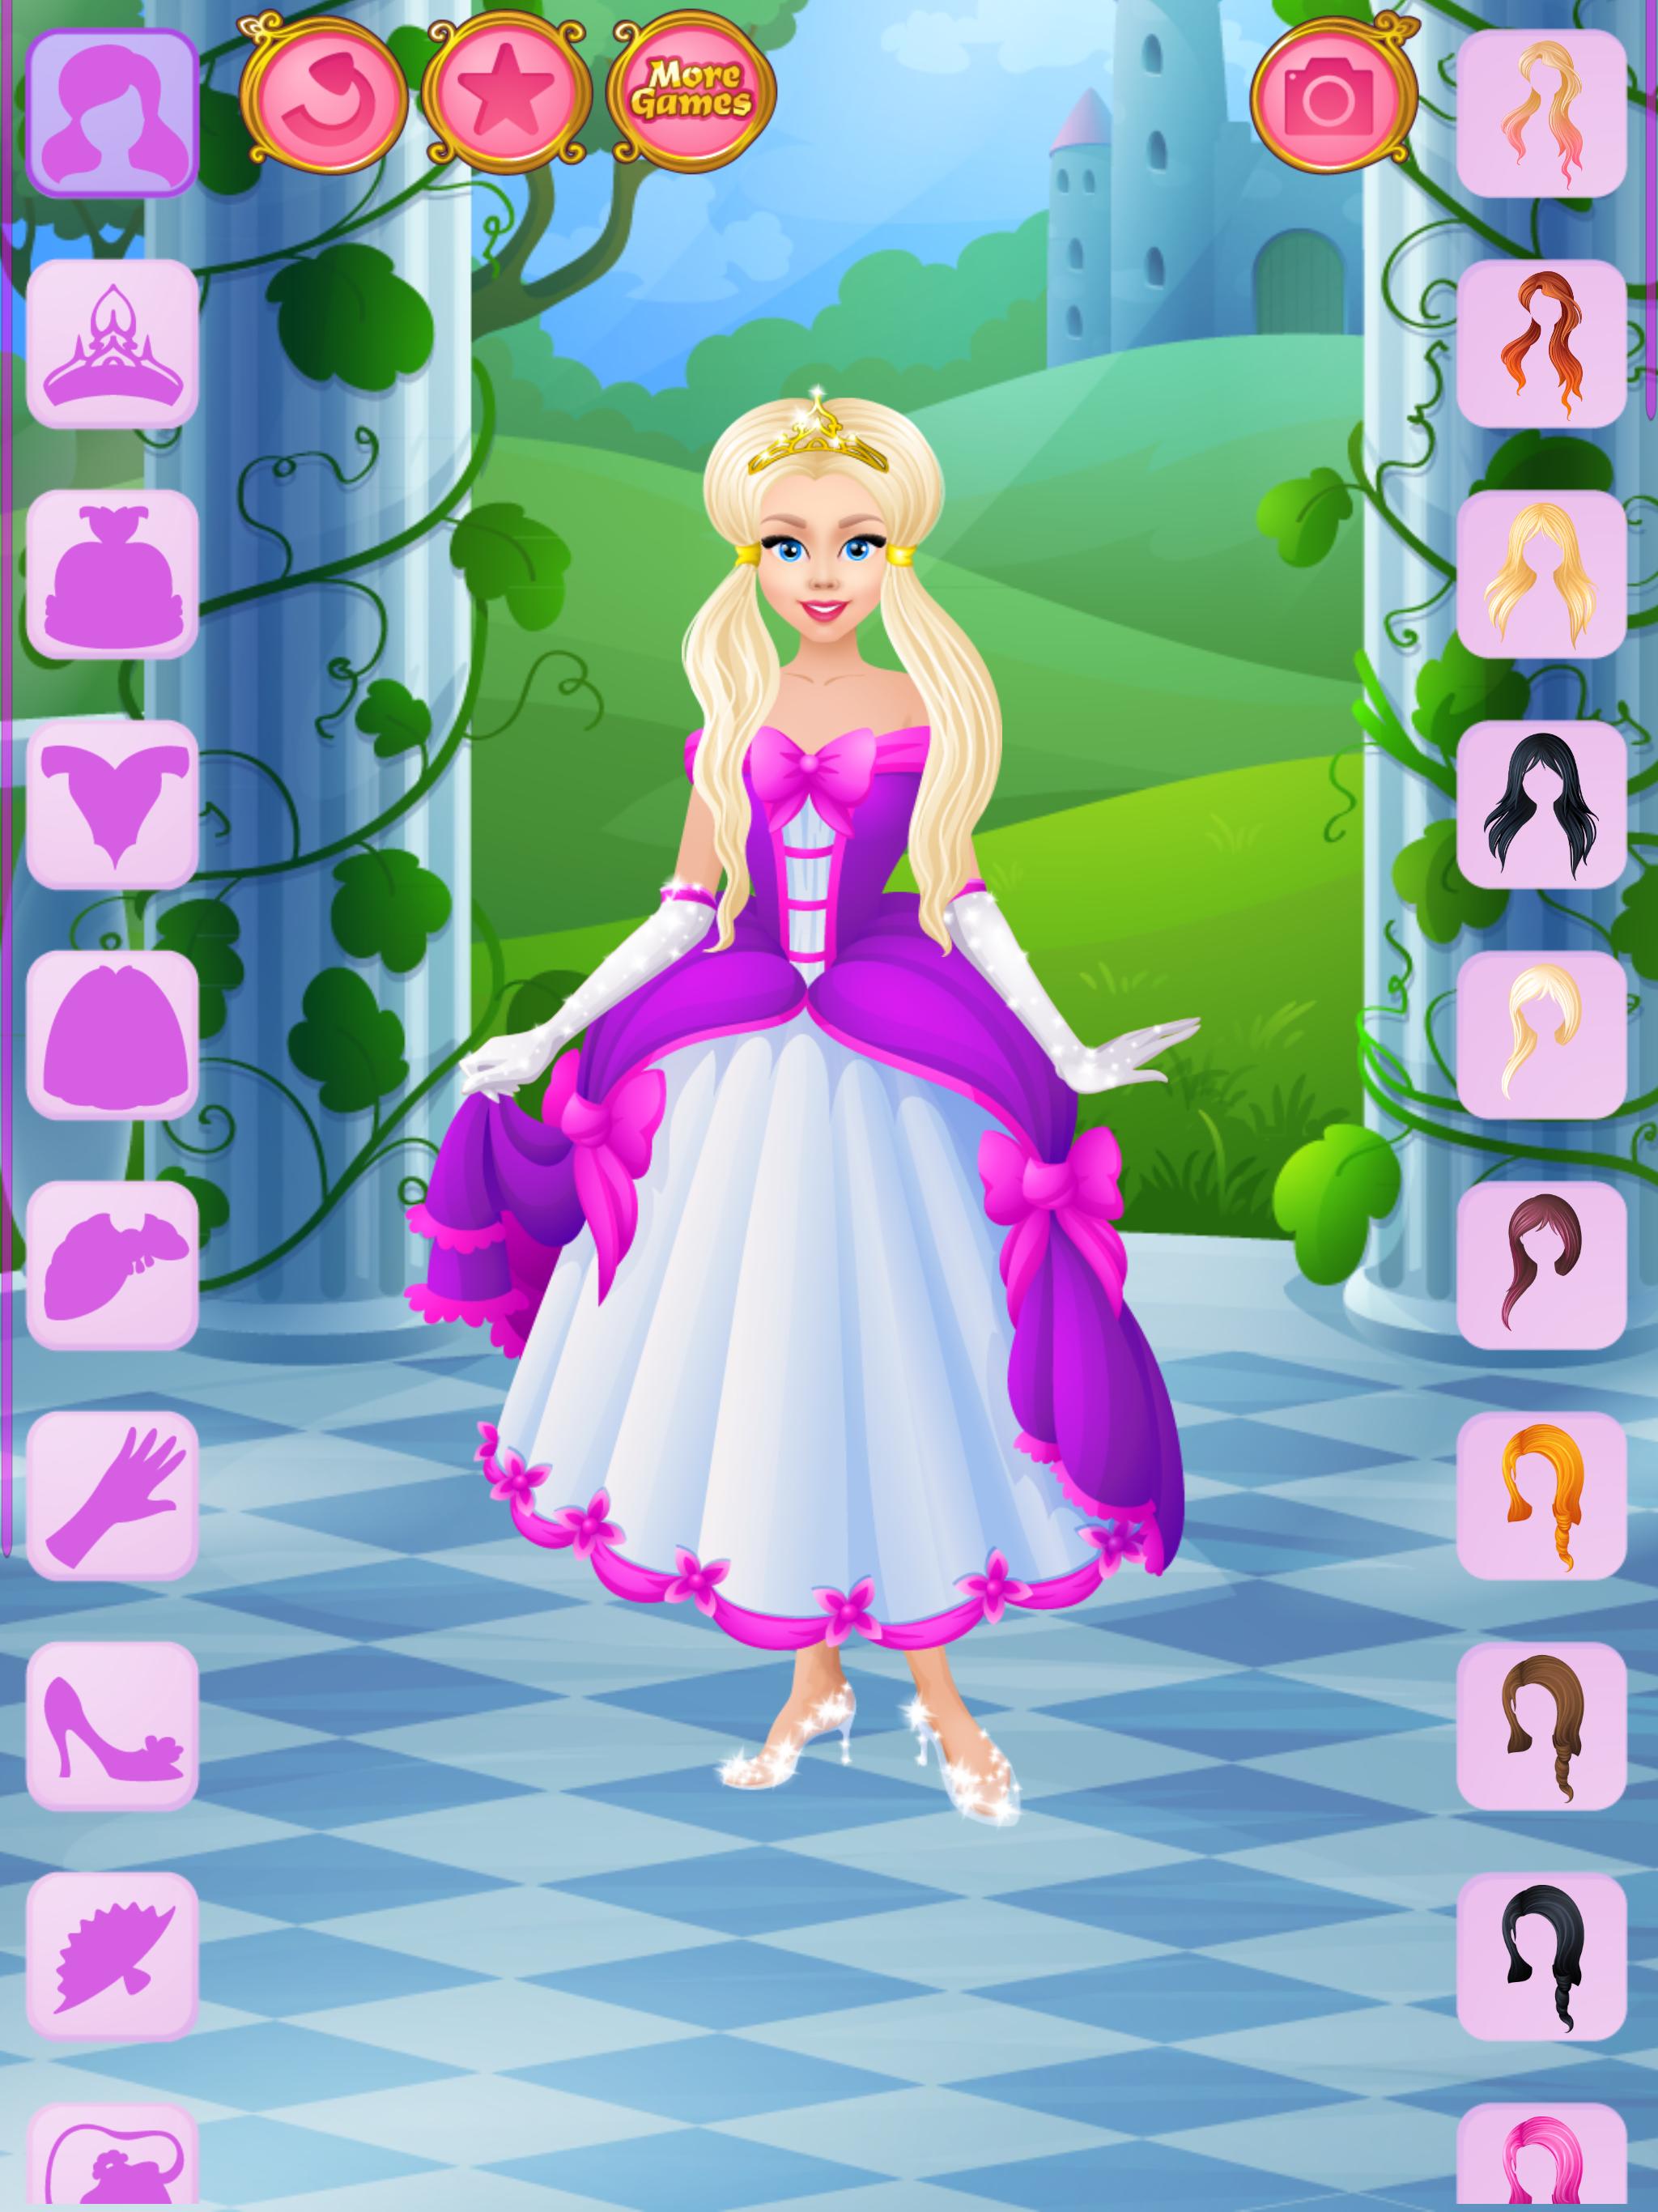 Dress up - Games for Girls 1.3.2 Screenshot 8